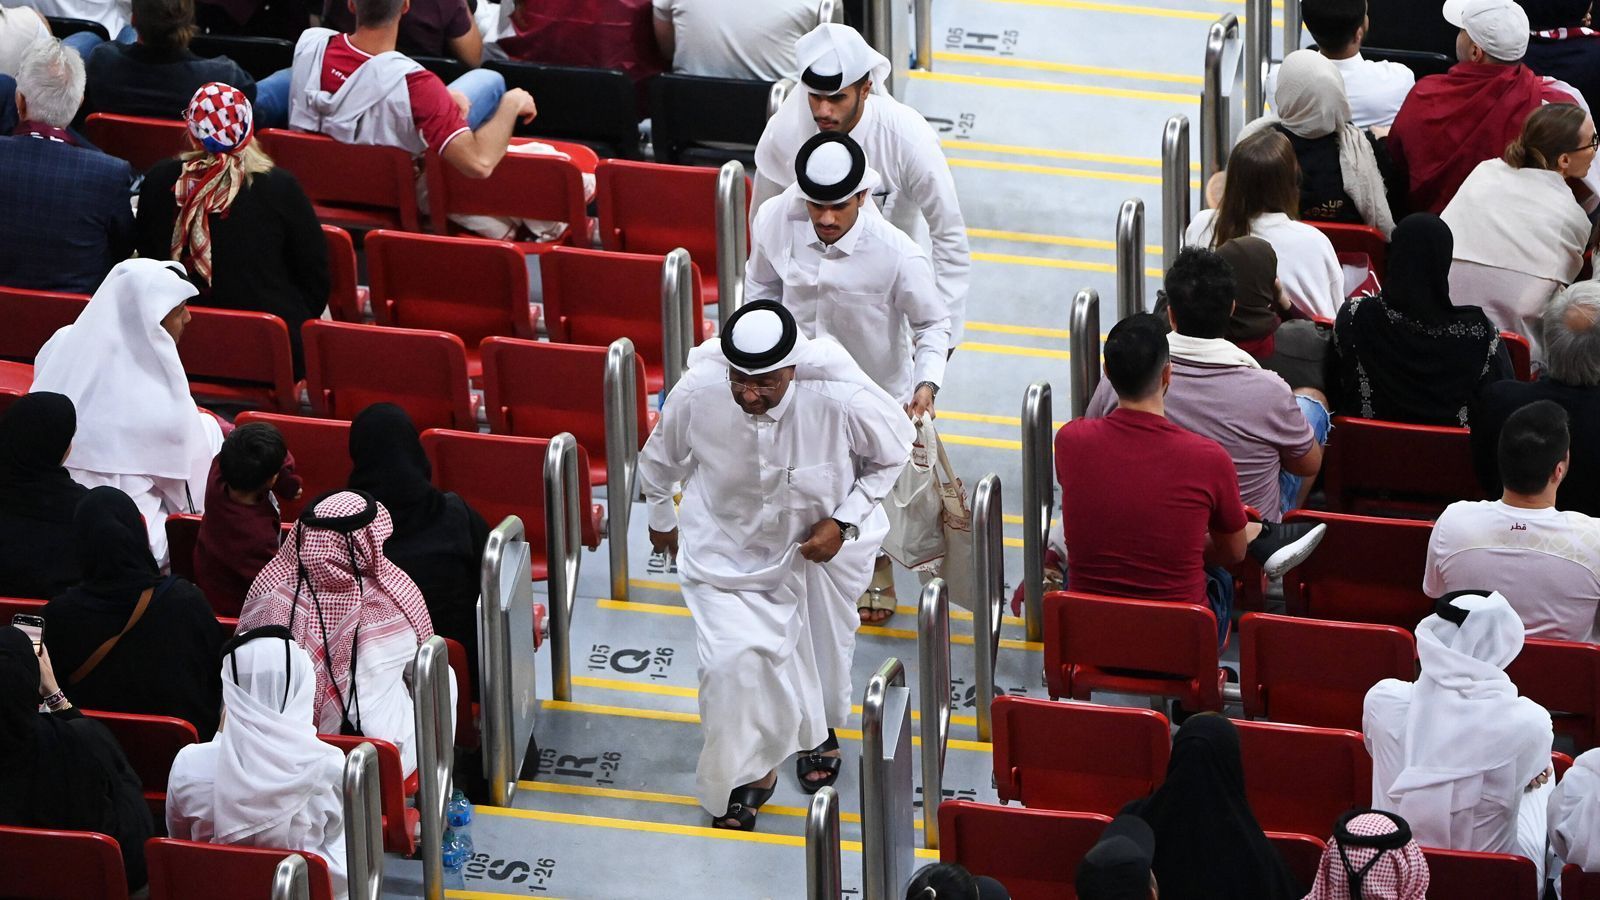 
                <strong>Fans verlieren Hoffnung nach frühem Rückstand</strong><br>
                Fußballfreude sieht anders aus: Nach einem 0:2-Rückstand nach 31 Minuten war die WM-Vorfreude bei den Kataris schnell verflogen. Statt ihr Team weiter anzufeuern, stürmten sie in Scharen aus der Arena.
              